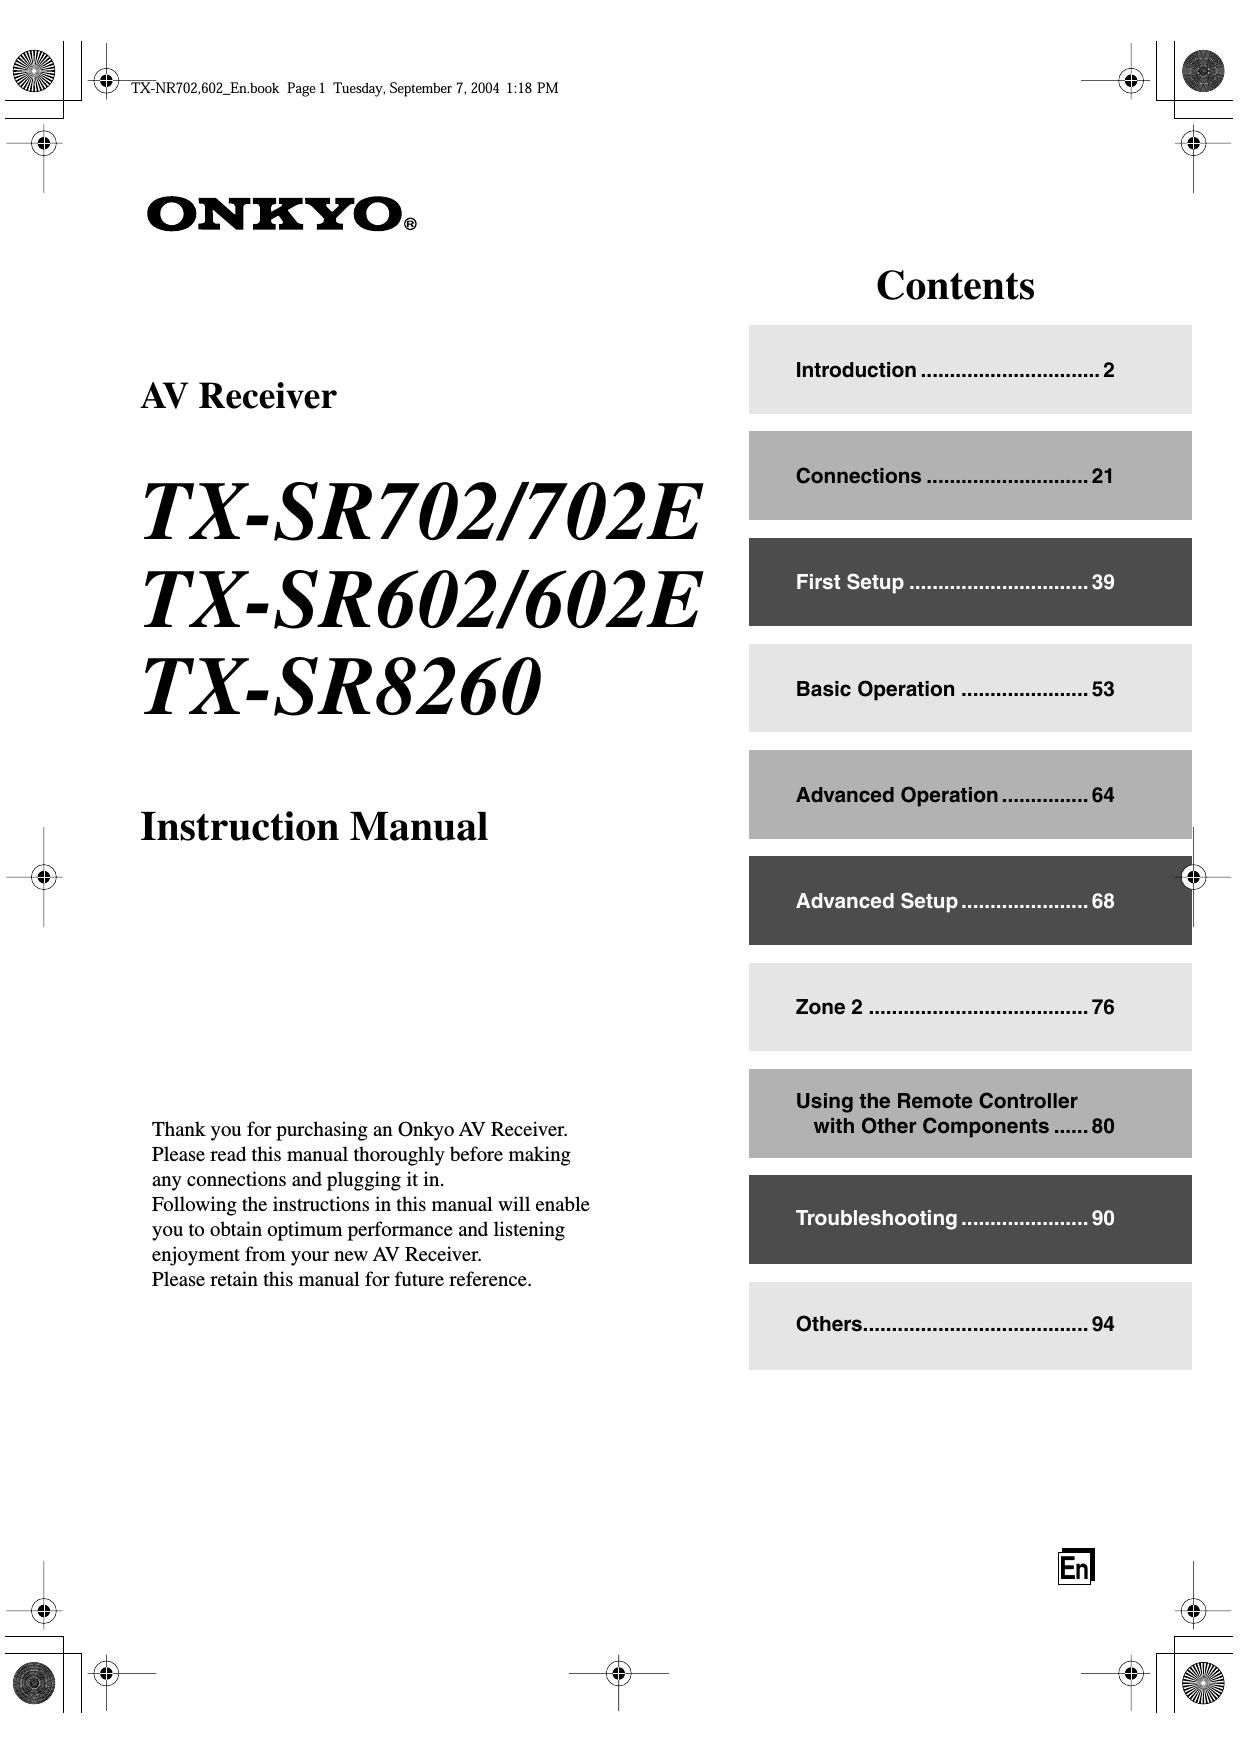 Onkyo TXSR 702 Owners Manual